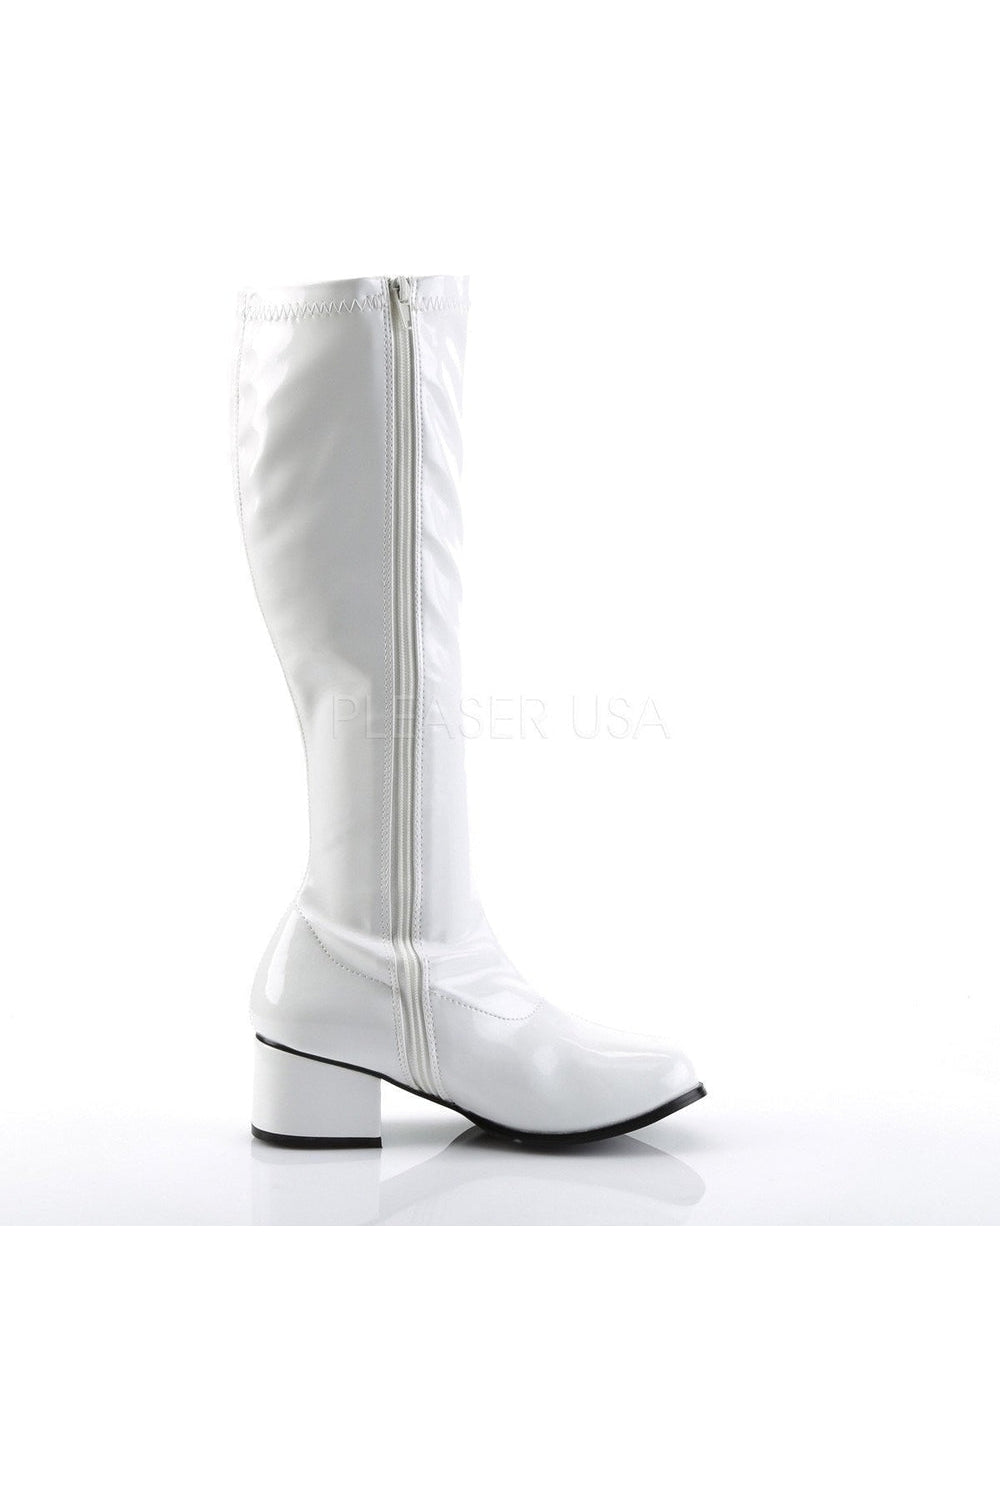 RETRO-300 Go Go Boot | White Patent-Funtasma-Knee Boots-SEXYSHOES.COM